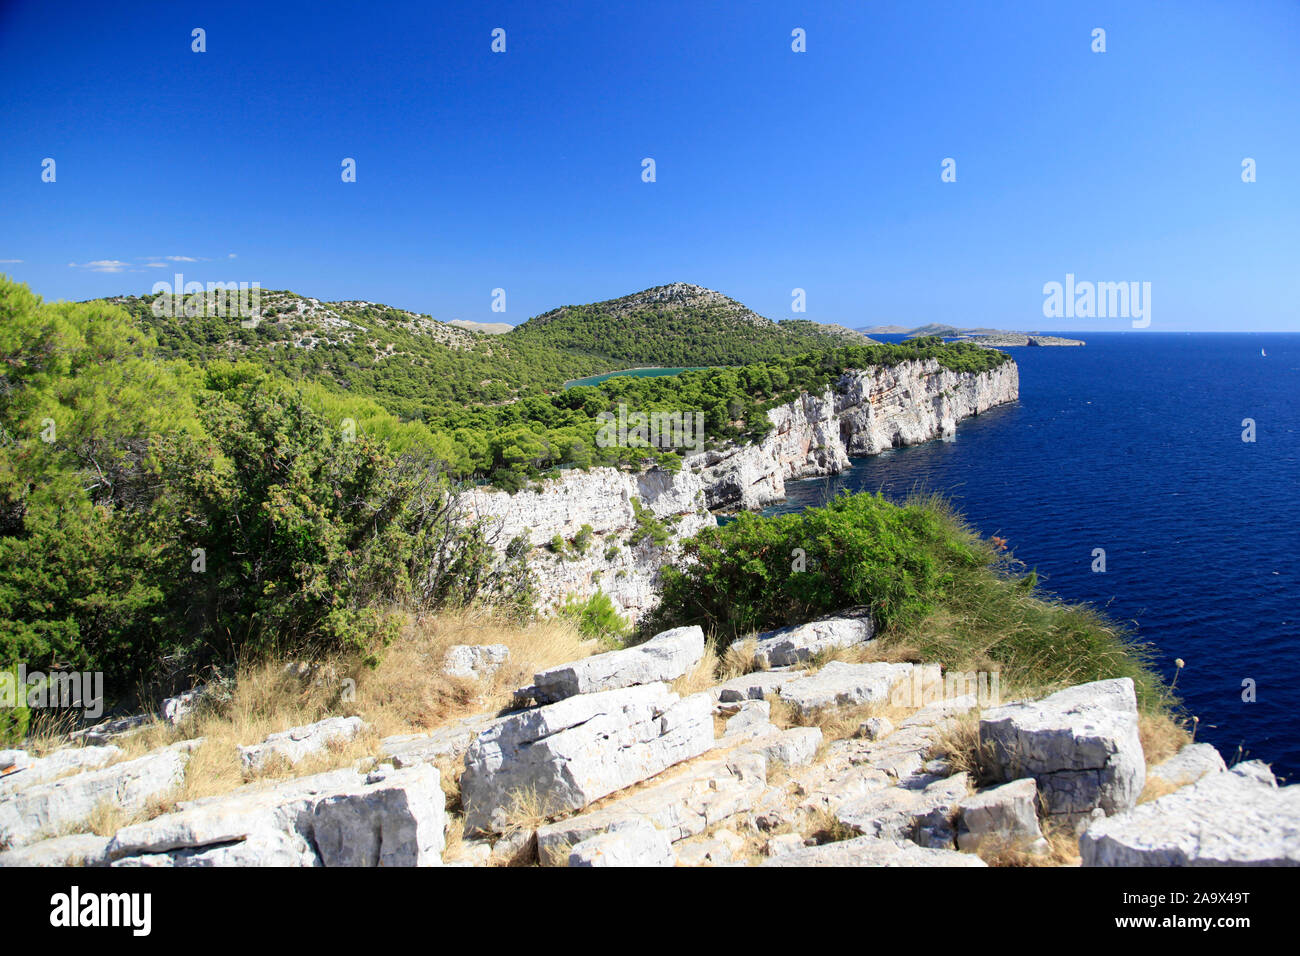 Steilkueste mit Salzsee der Insel Dugi otok in der Adria, Kroatien Stock Photo